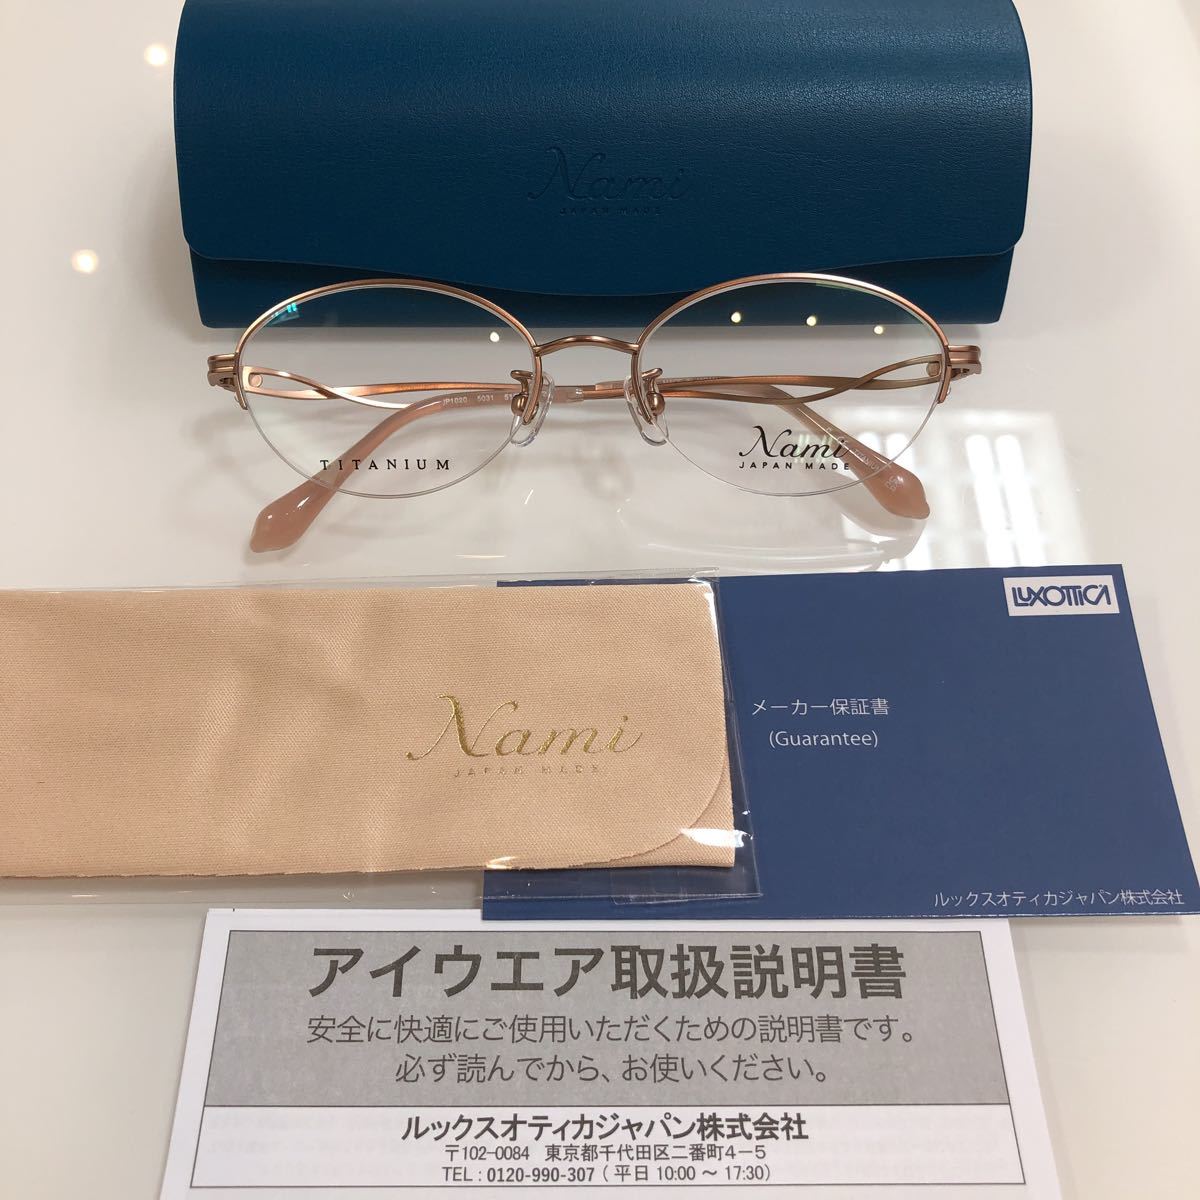 日本製 安心の2年正規保証付き! Nami 国産 眼鏡 Japan メガネフレーム ...